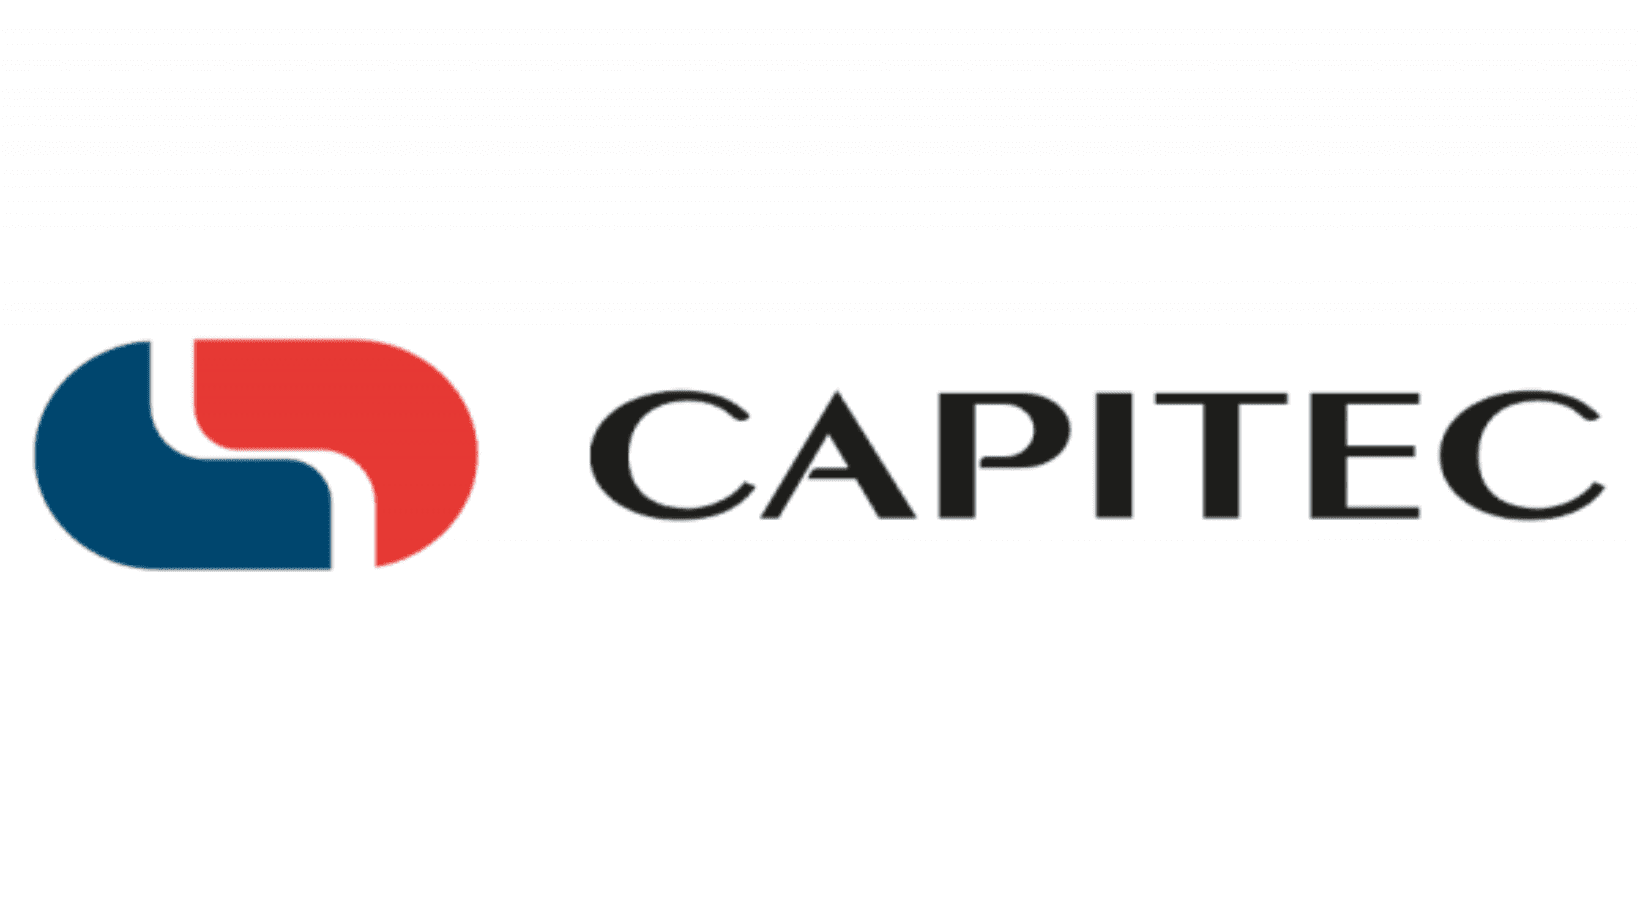 Capitec Bank Fixed Deposit Accounts and Rates